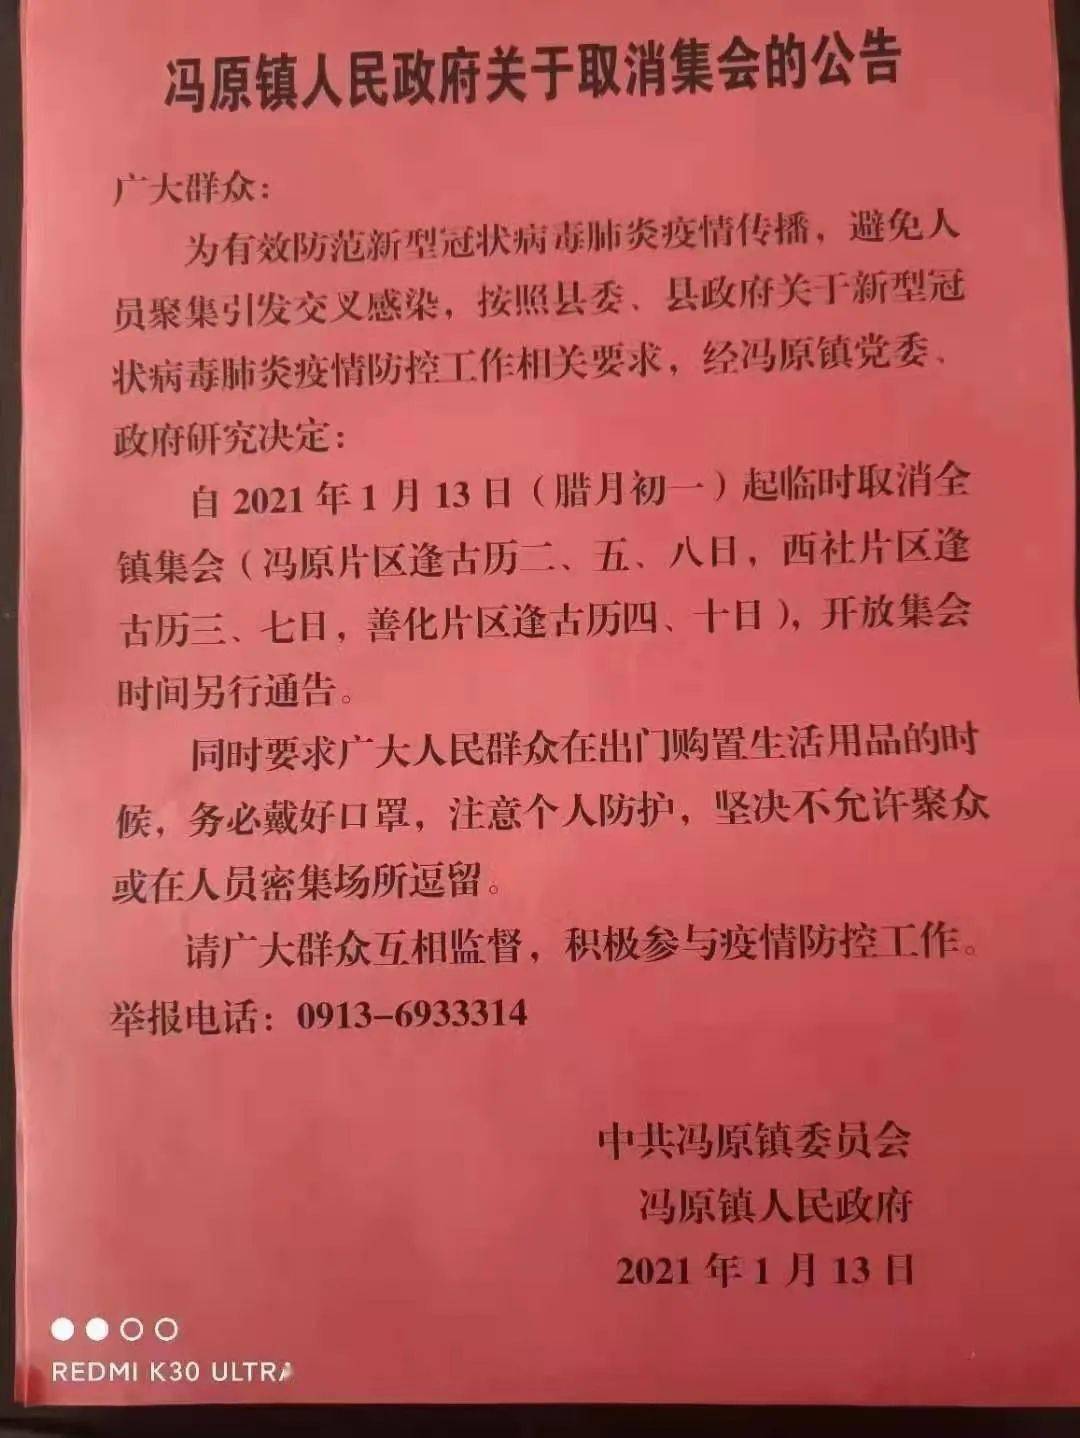 冯原镇: 冯原镇人民政府关于取消集会的公告